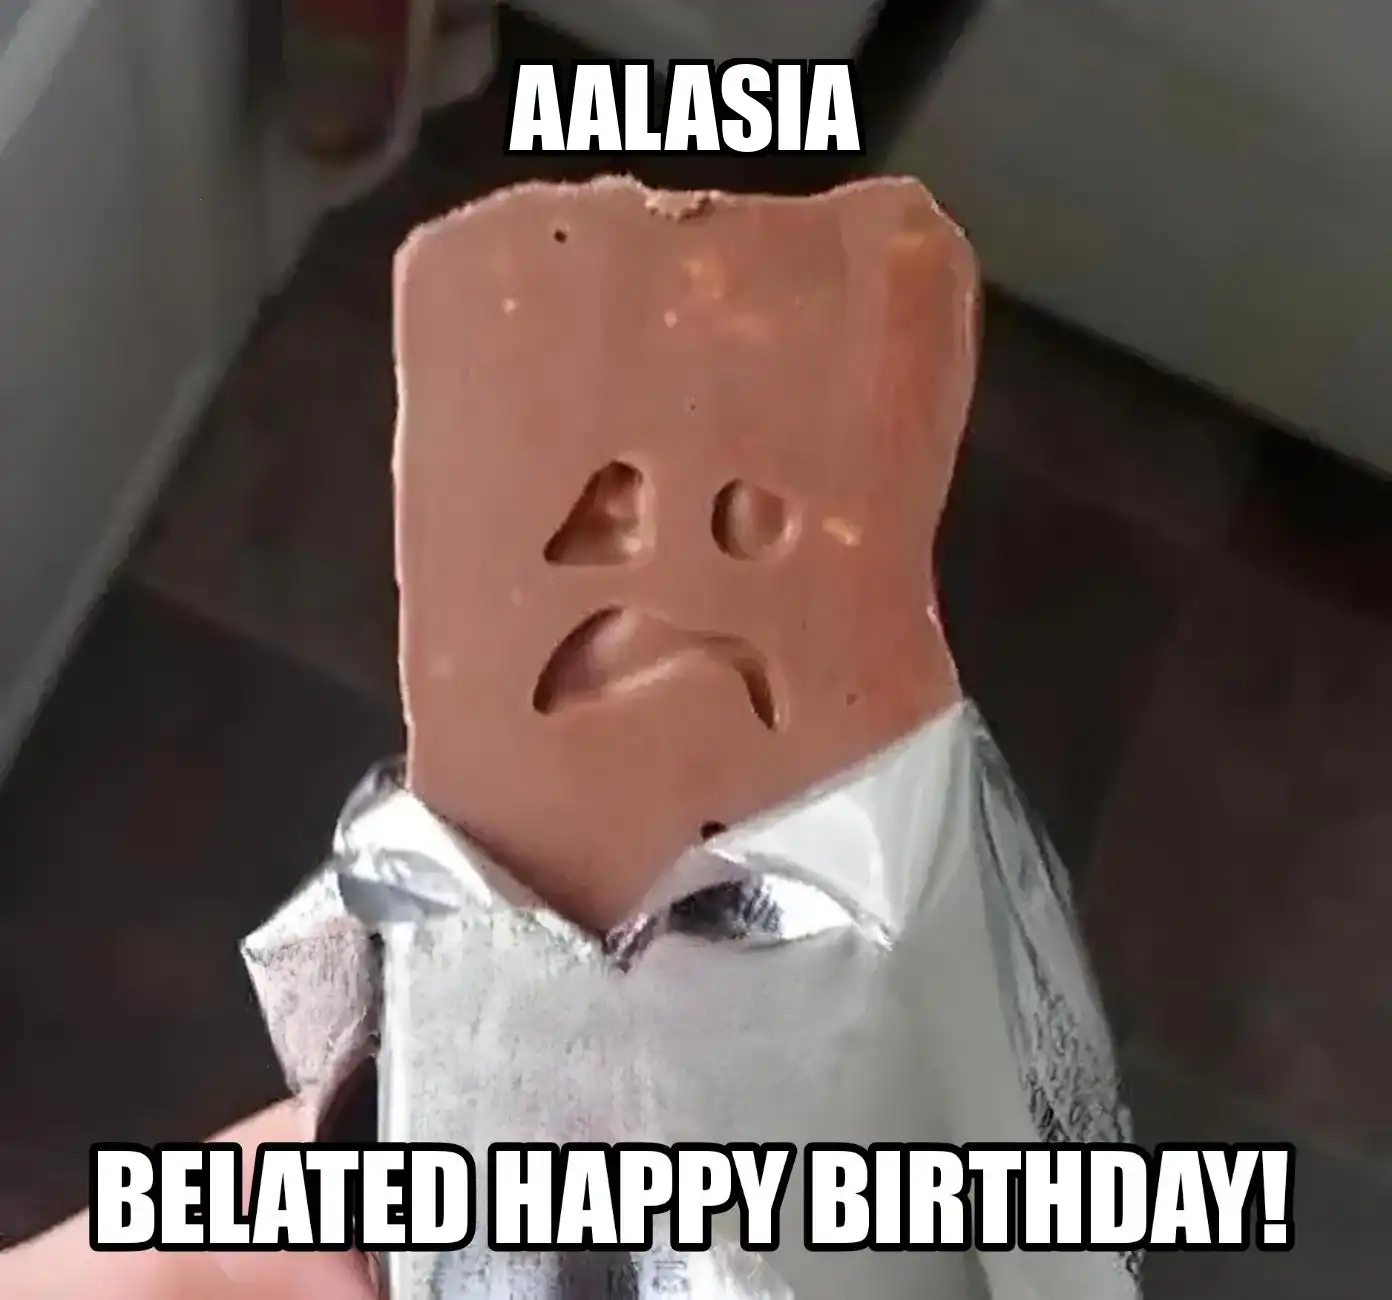 Happy Birthday Aalasia Belated Happy Birthday Meme